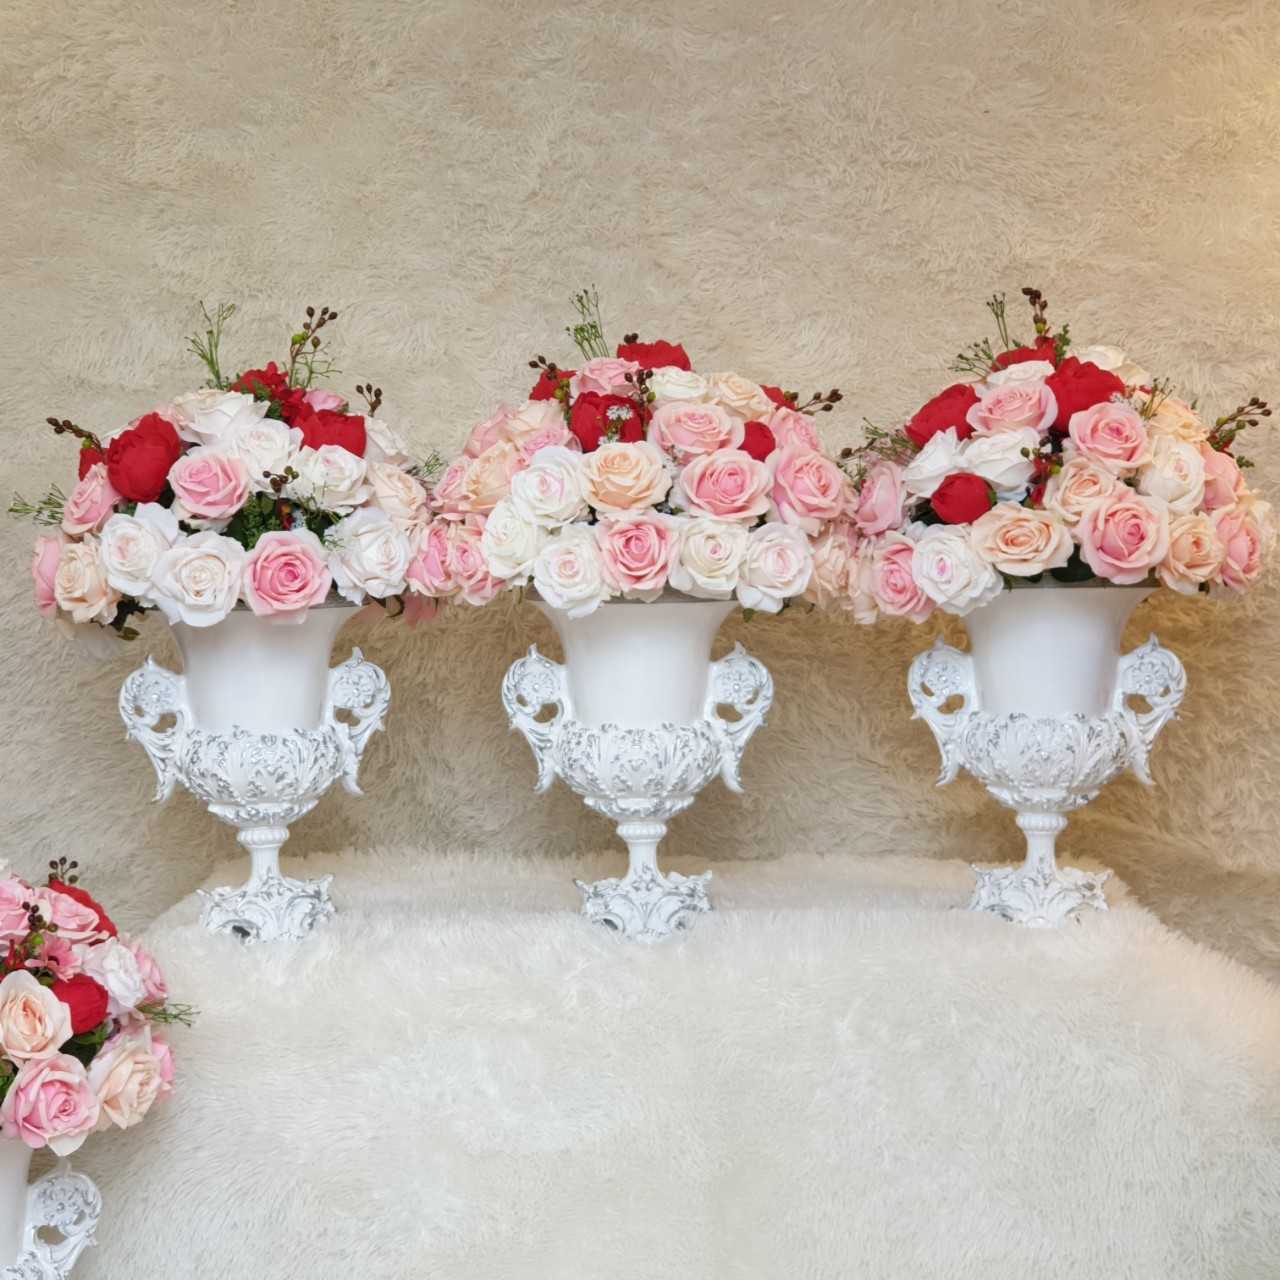 bình gốm được cắm hoa hồng để bàn ngày cưới